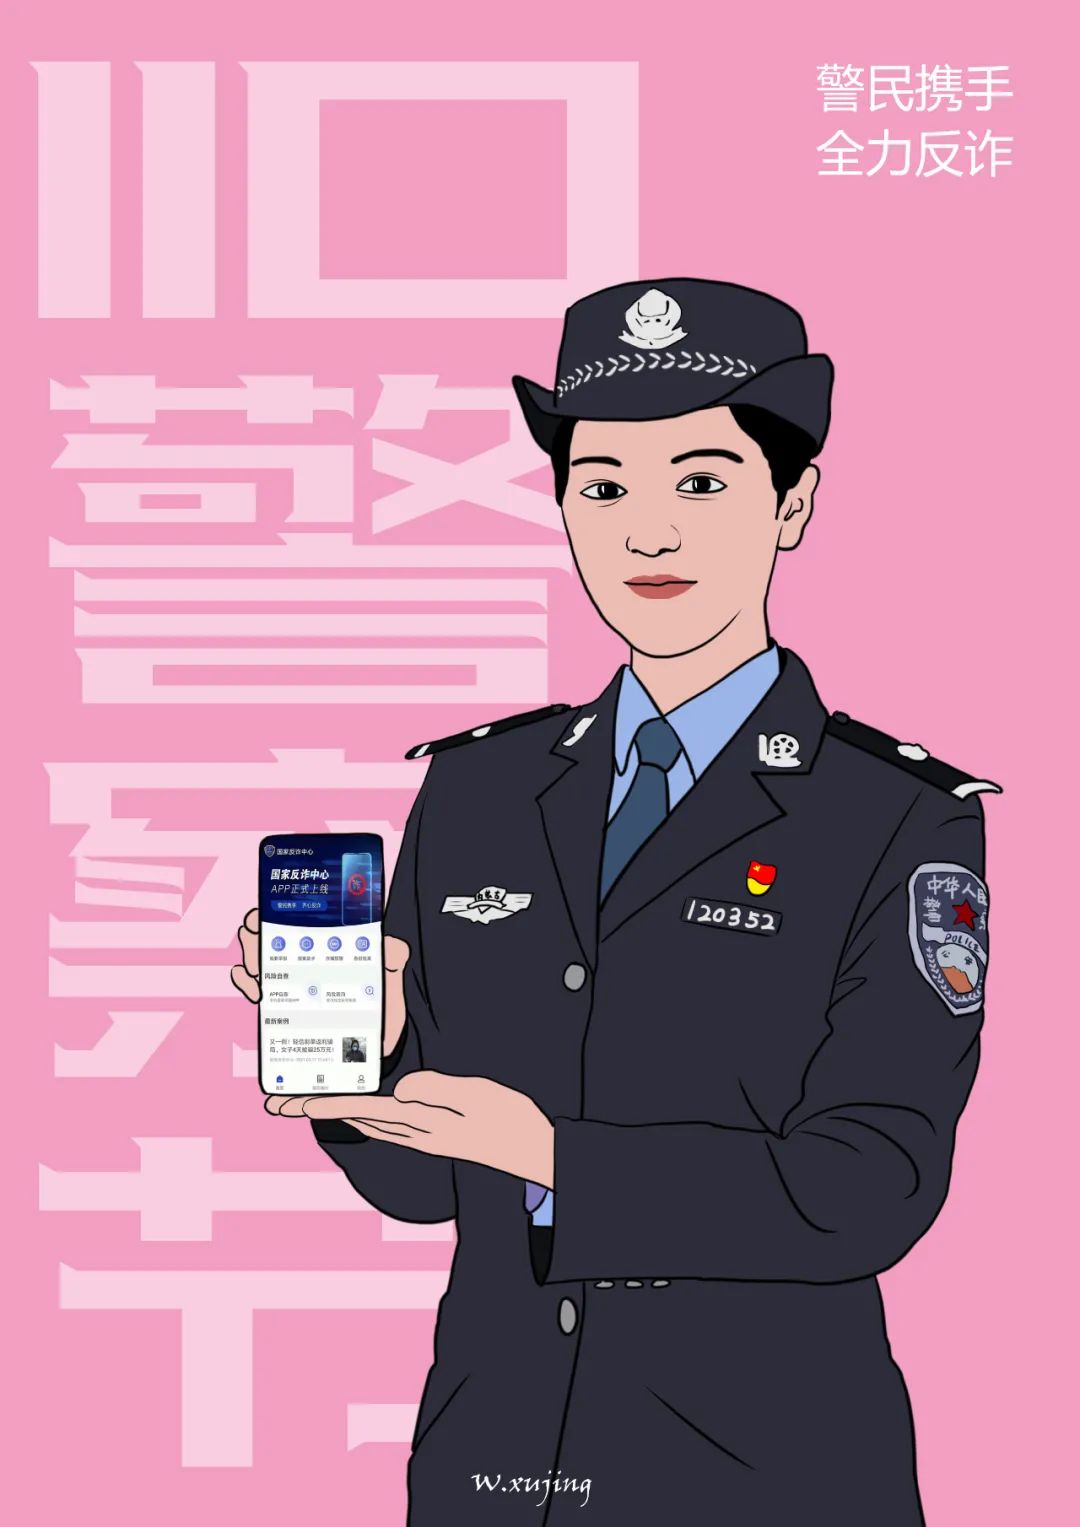 中国人民警察节漫画图片